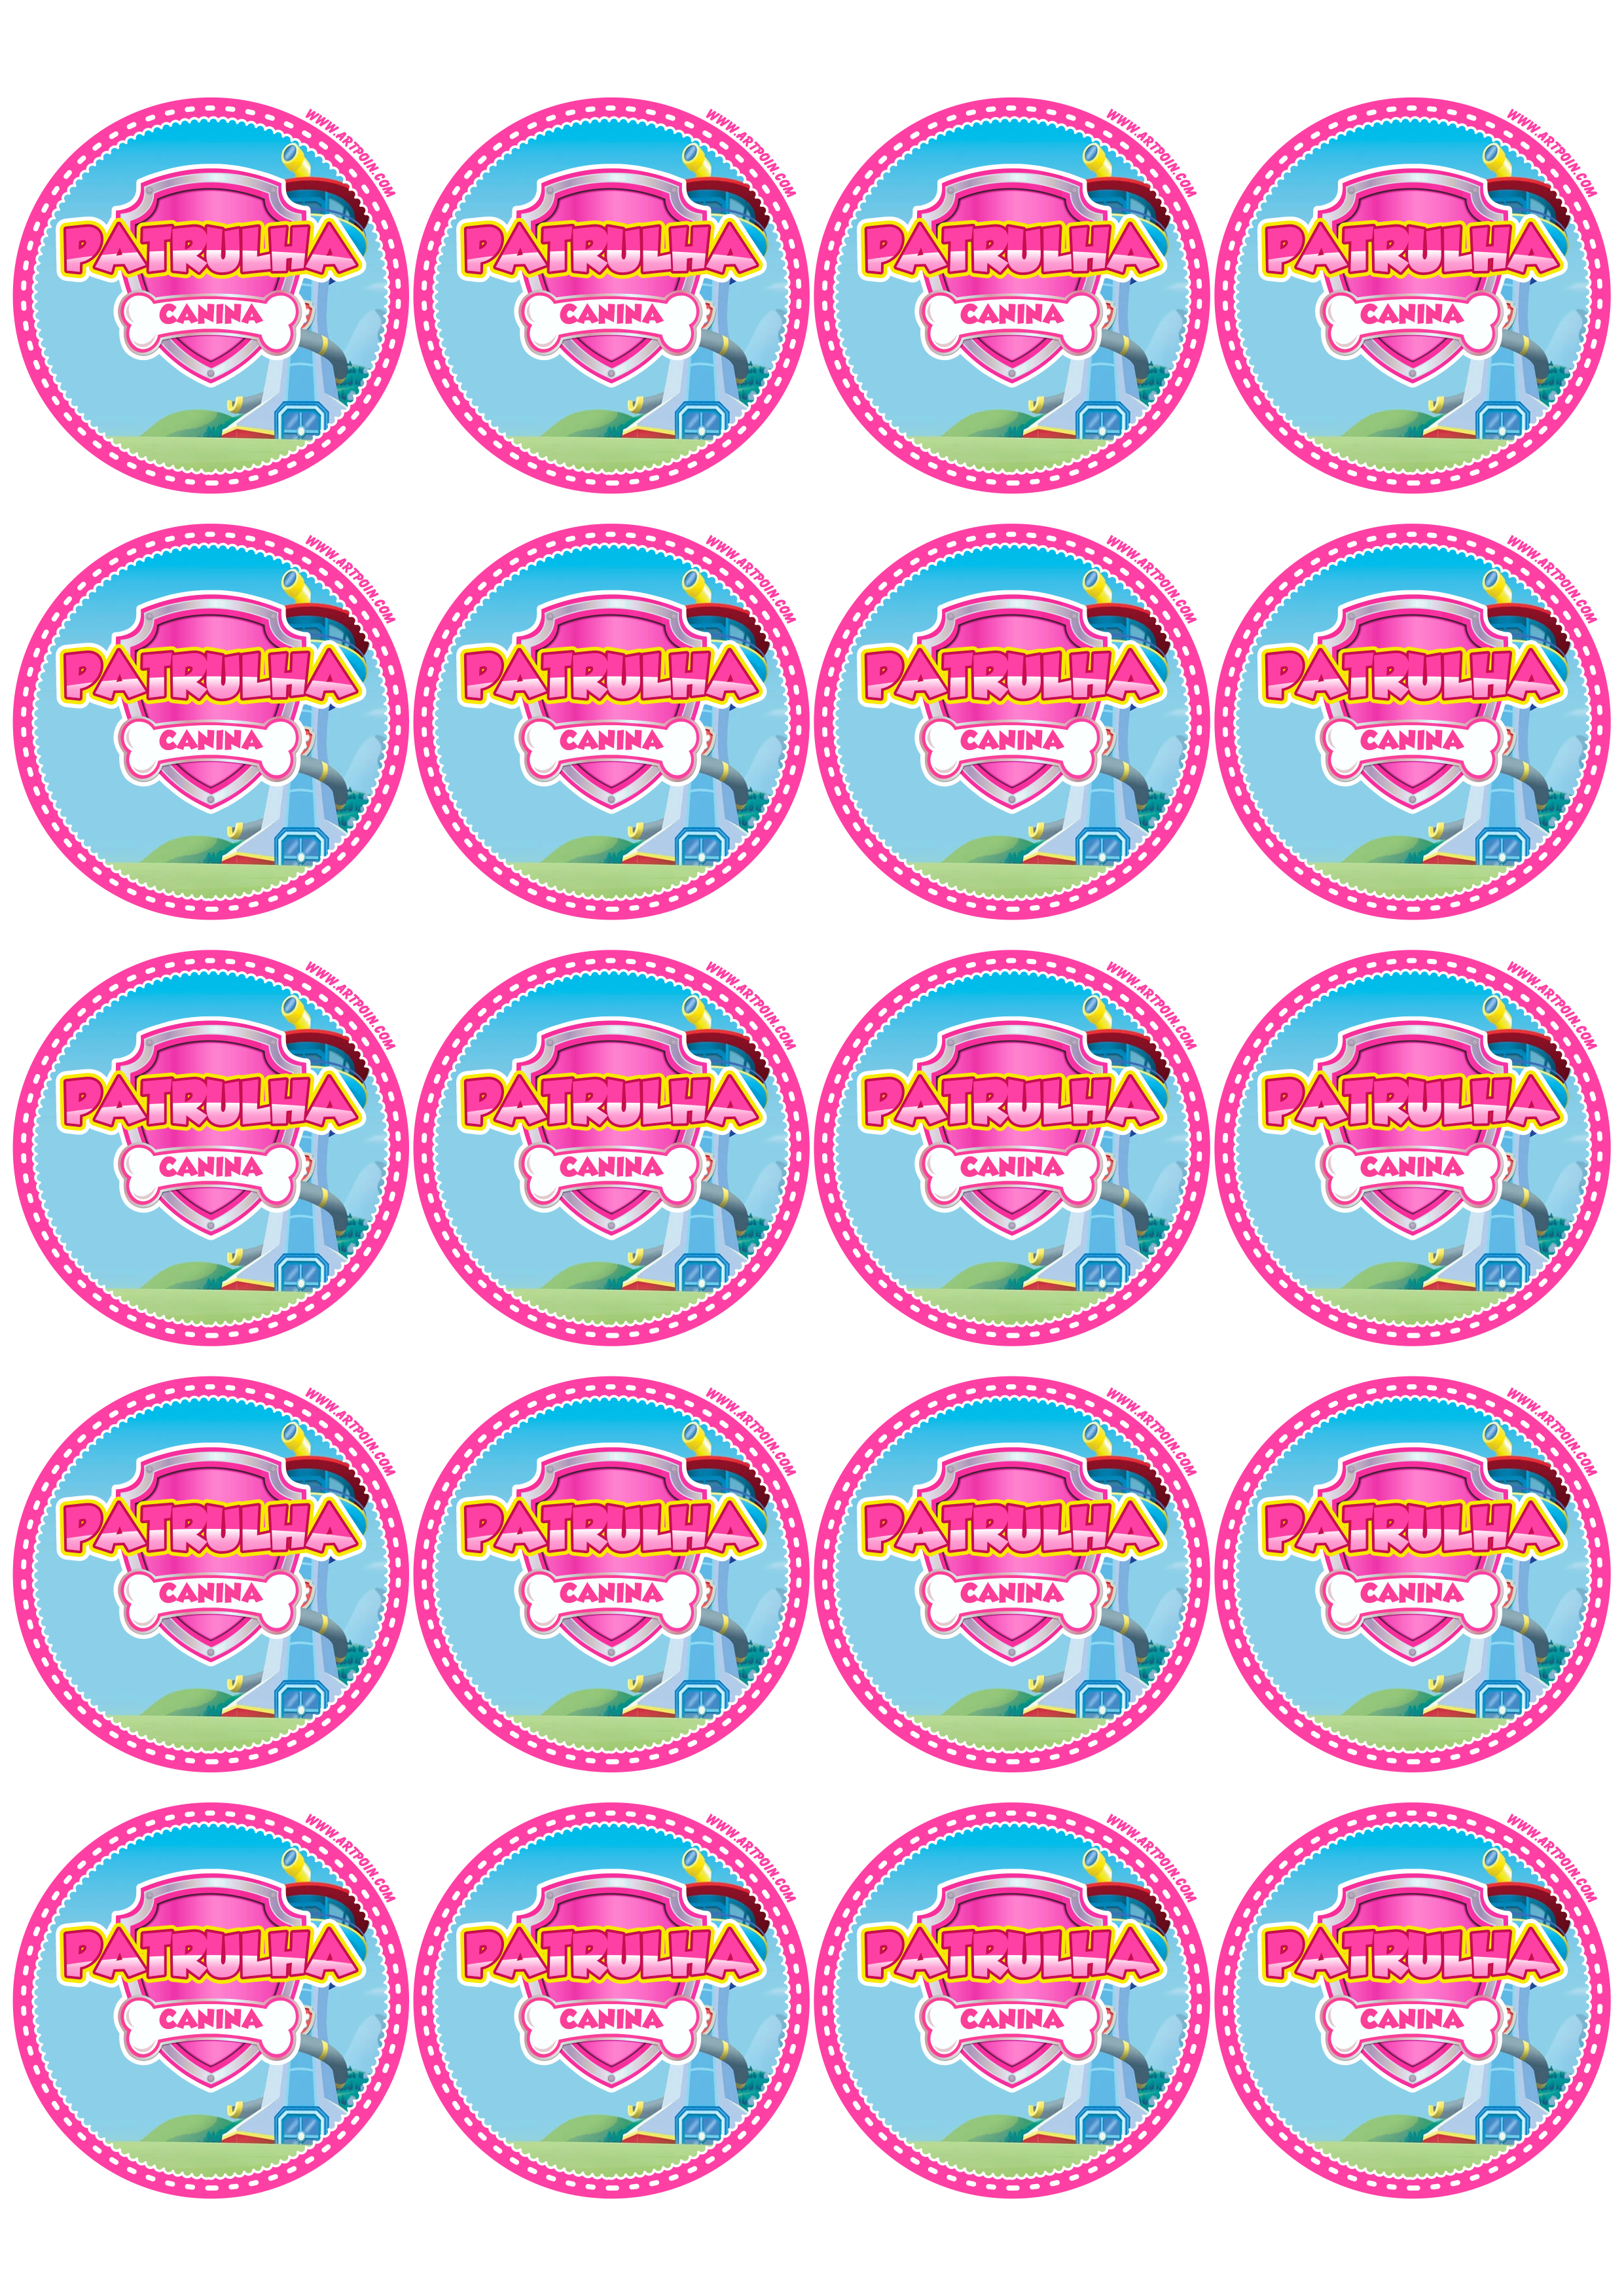 Patrulha canina rosa pink adesivo redondo tag sticker decoração de aniversário infantil artigos de papelaria 20 imagens png